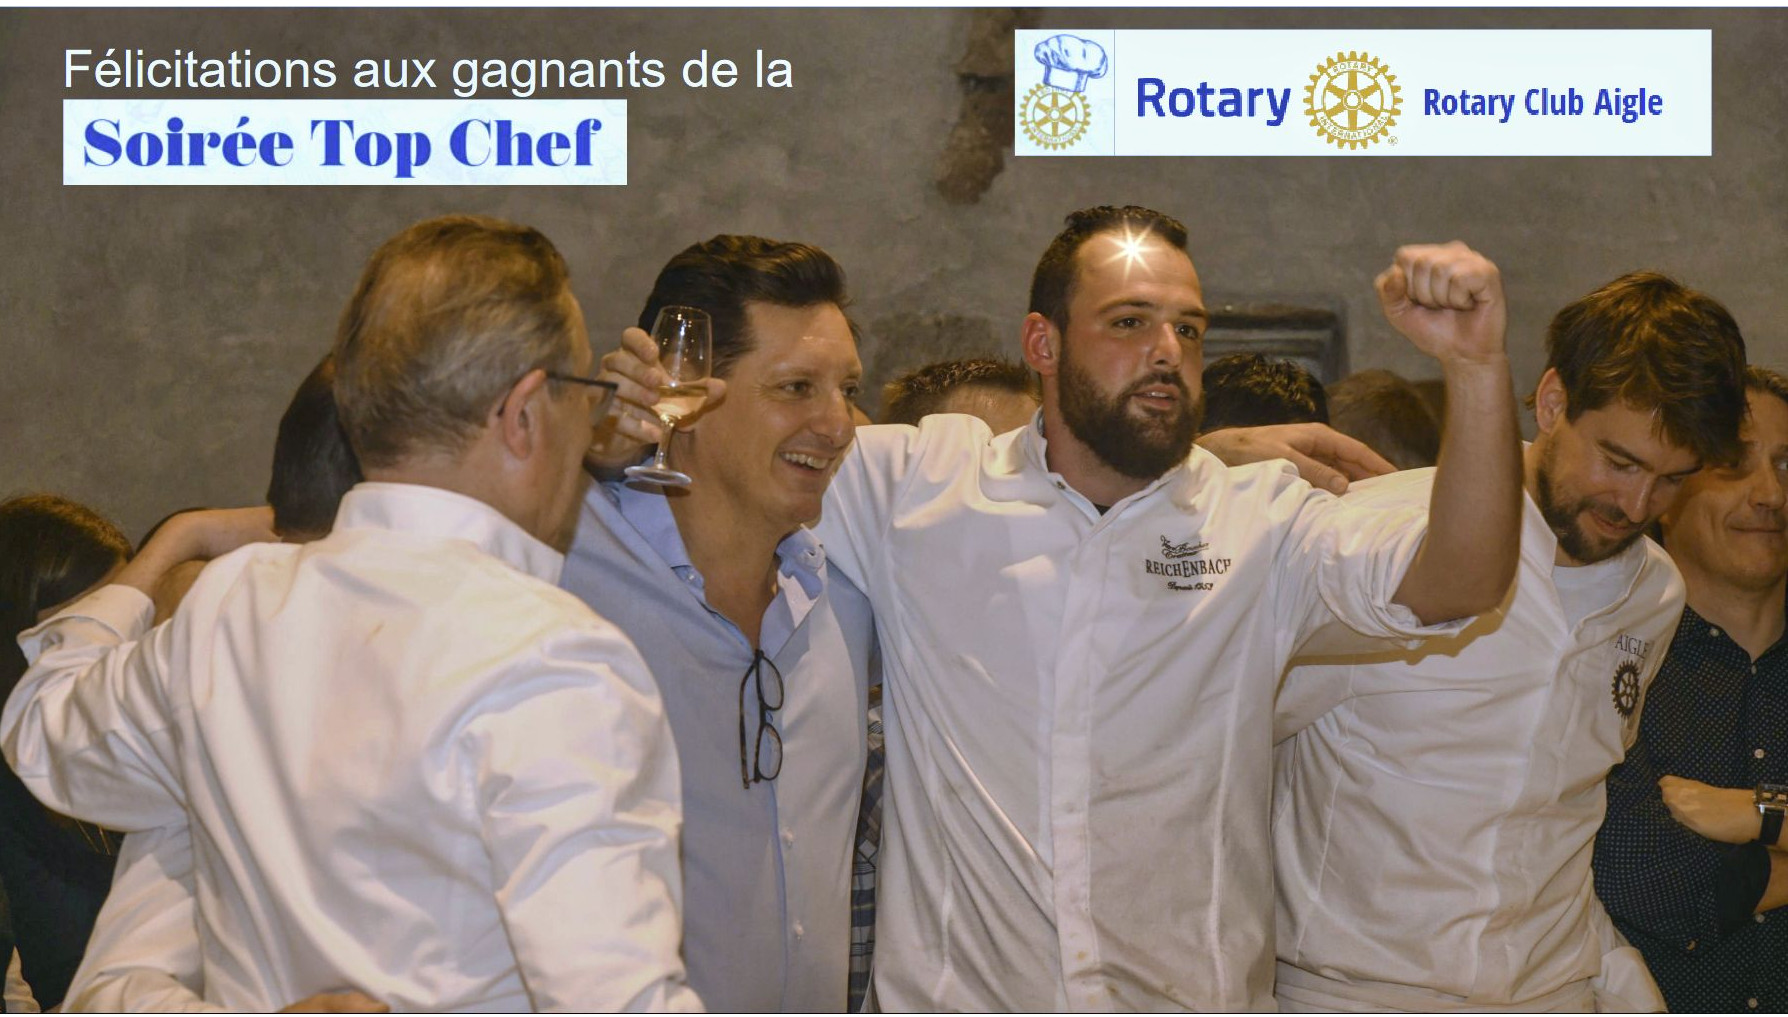 Du bonheur à la soirée Top Chefs Rotary